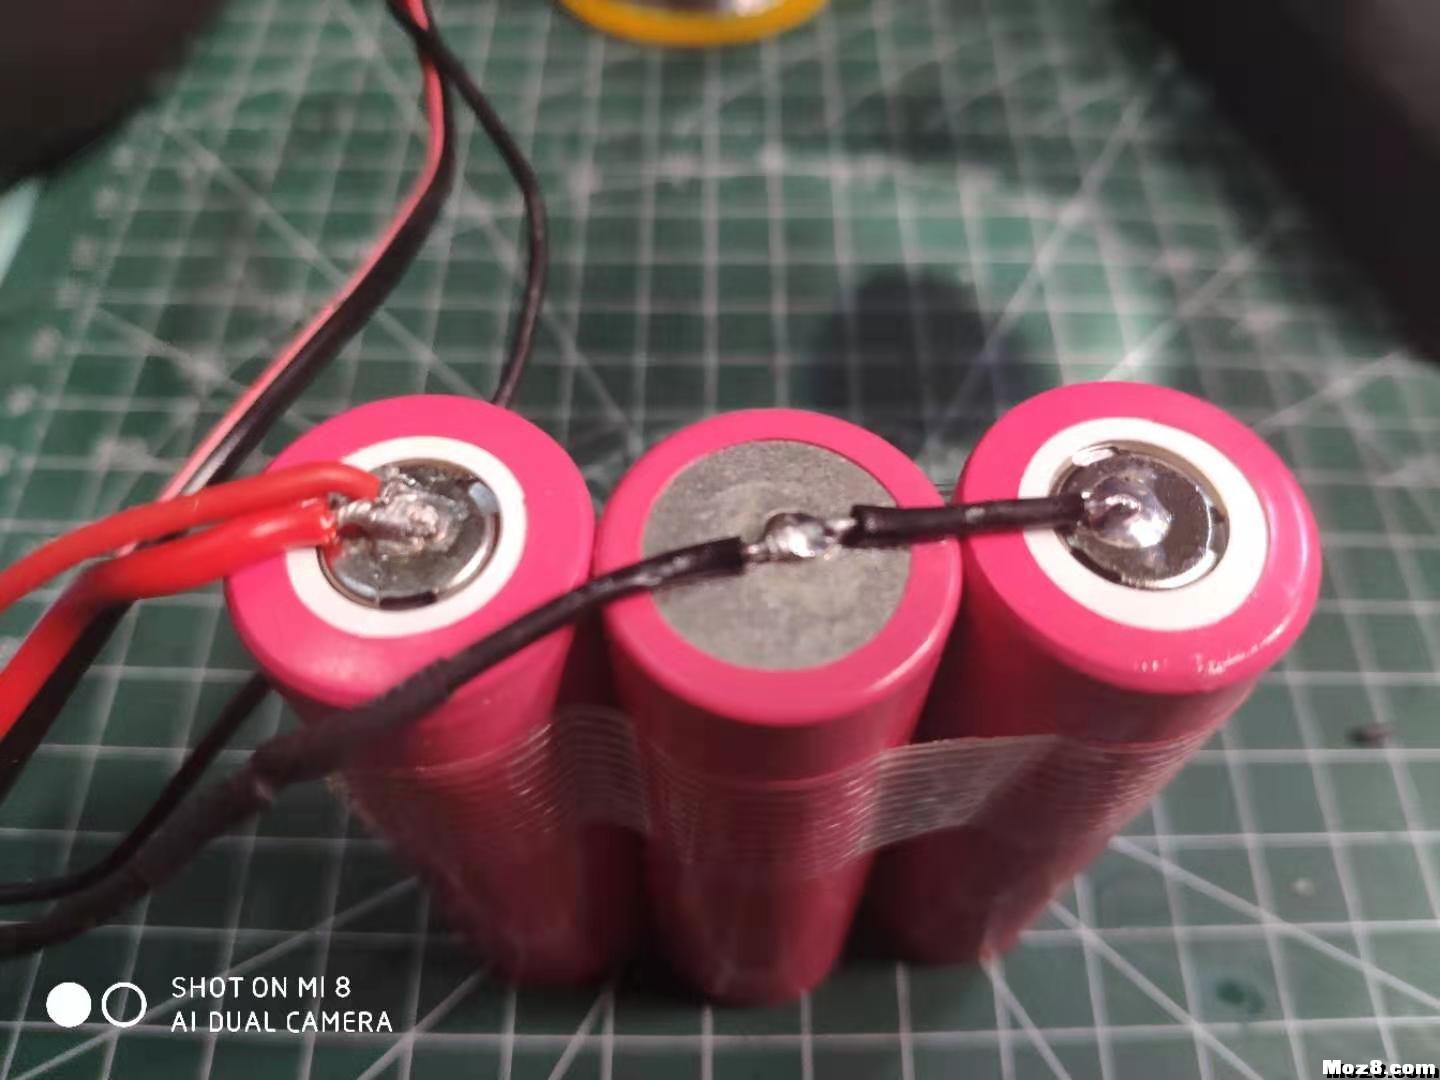 自制遥控模型电池组的方法 航模,模型,电池 作者:summer474cn 1075 